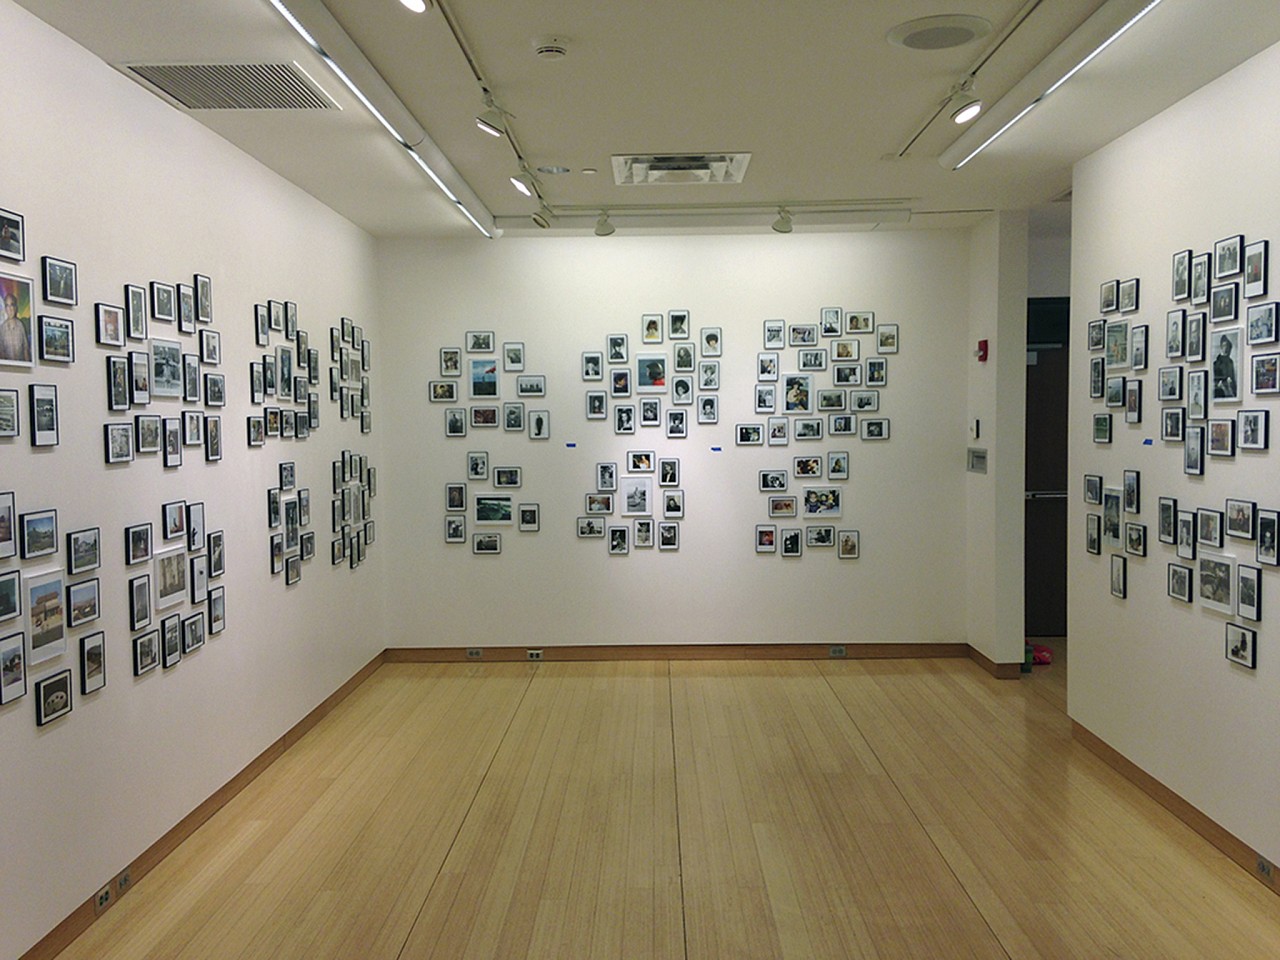 Oliver Wasow, Installation: Hudson Valley Community College, New York (installation view)
Found photographs